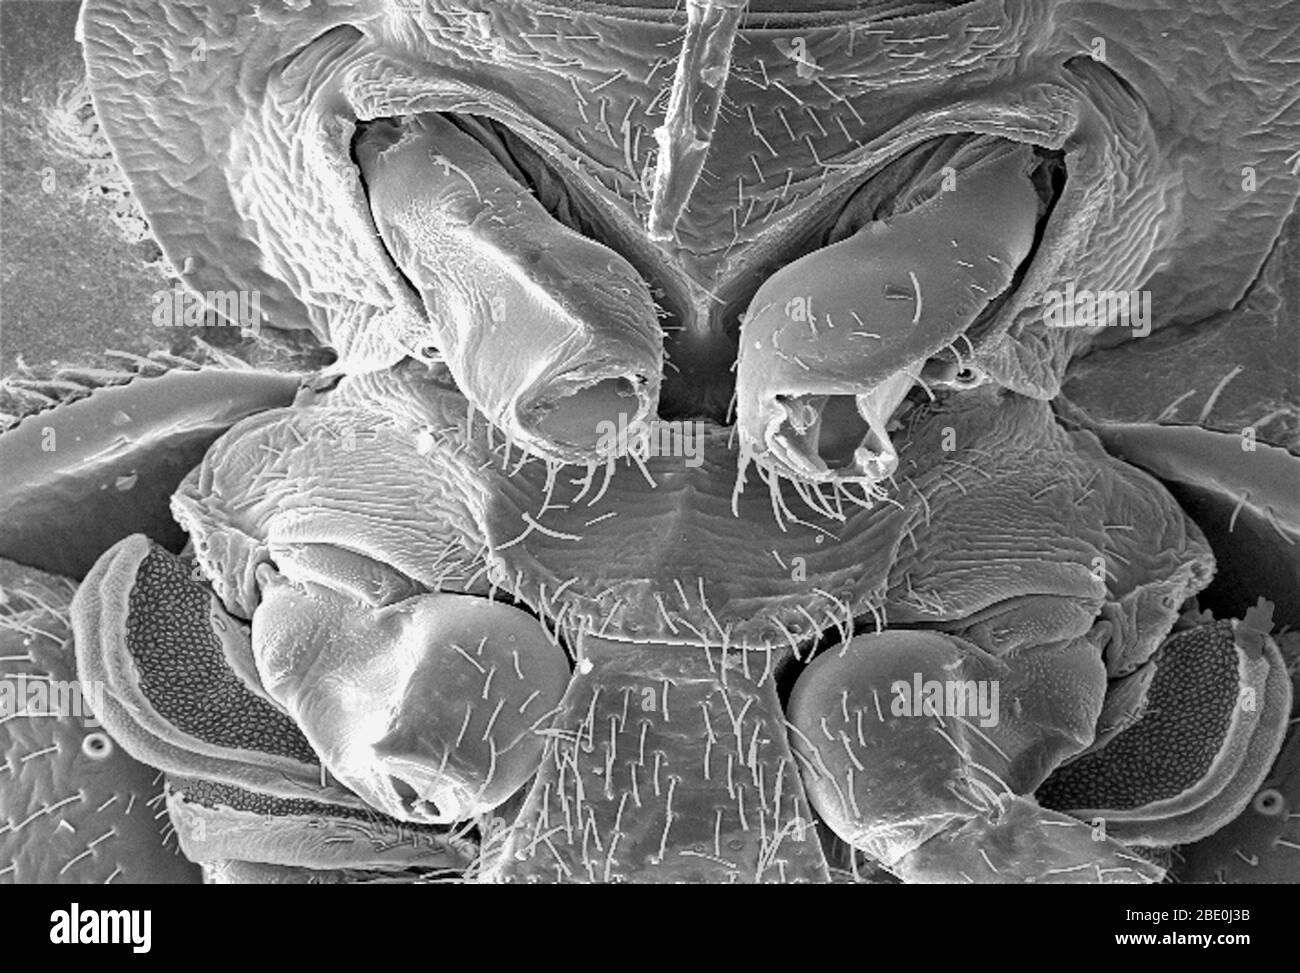 El micrografo electrónico (SEM) de barrido reveló parte de la morfología ultraestructural mostrada en la superficie ventral de un bicho de cama, Cimex lectularius. Desde esta vista, en la parte superior, se puede ver la piel del insecto que piercing las partes de la boca que utiliza para obtener su harina de sangre, así como un número de sus seis piernas articuladas desarticuladas. También notará una hermosa estructura diáfana en la parte inferior de la imagen. Se especula que este maravilloso órgano ultraestructural es probablemente una glándula de olor, o relacionada con la diseminación del aroma, que puede ser feromonal en naturaleza. Una disección más de esto, y. Foto de stock